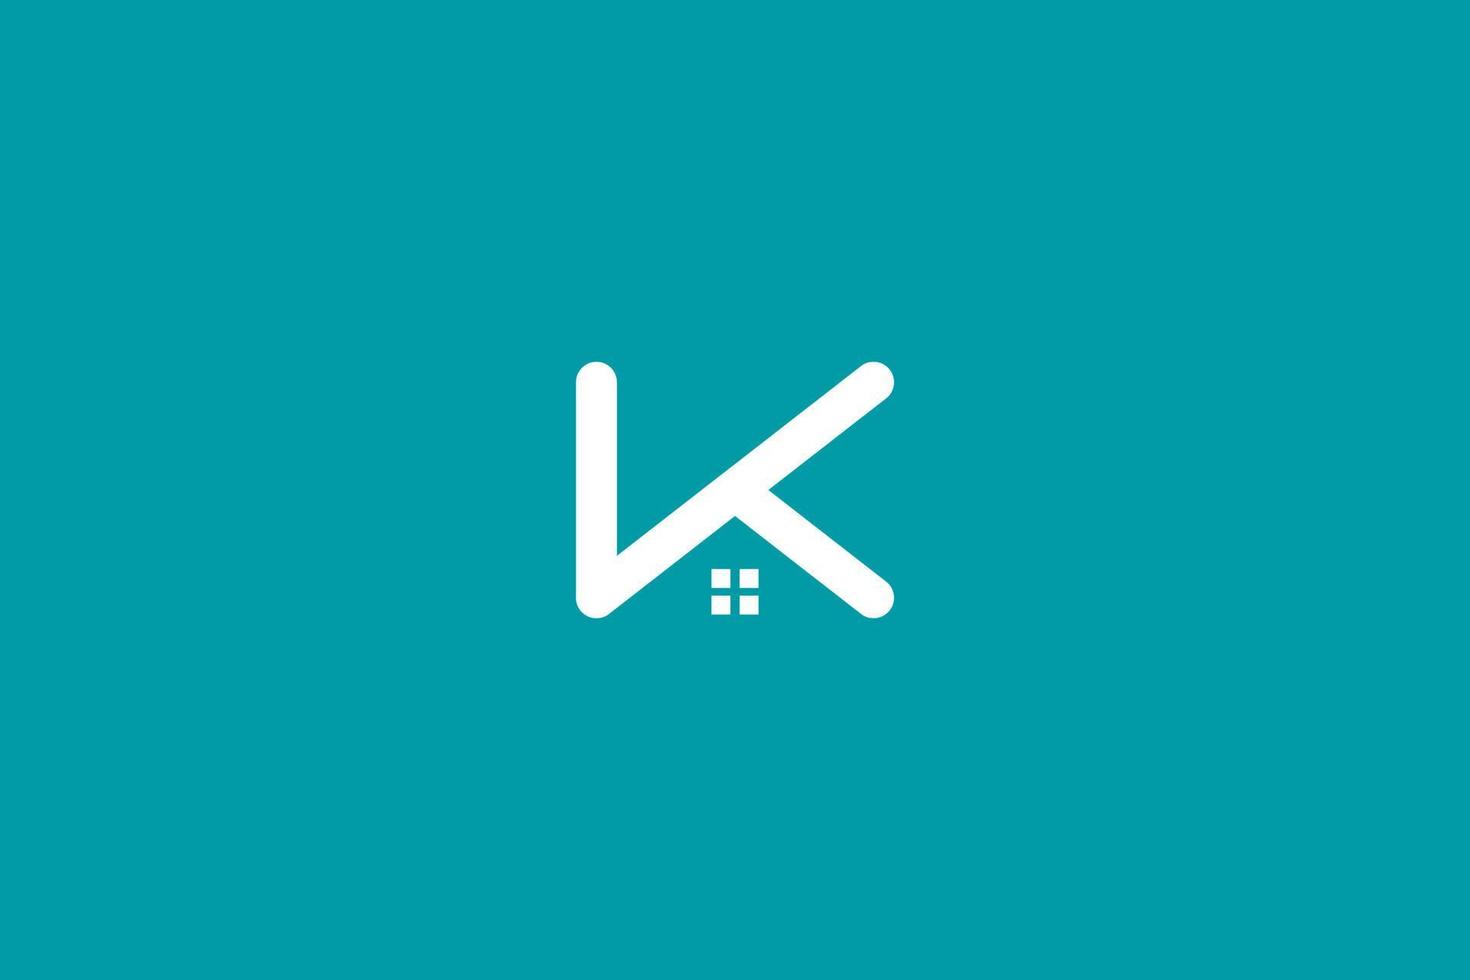 K home logo . real estate logo with letter k initials . vector illustration